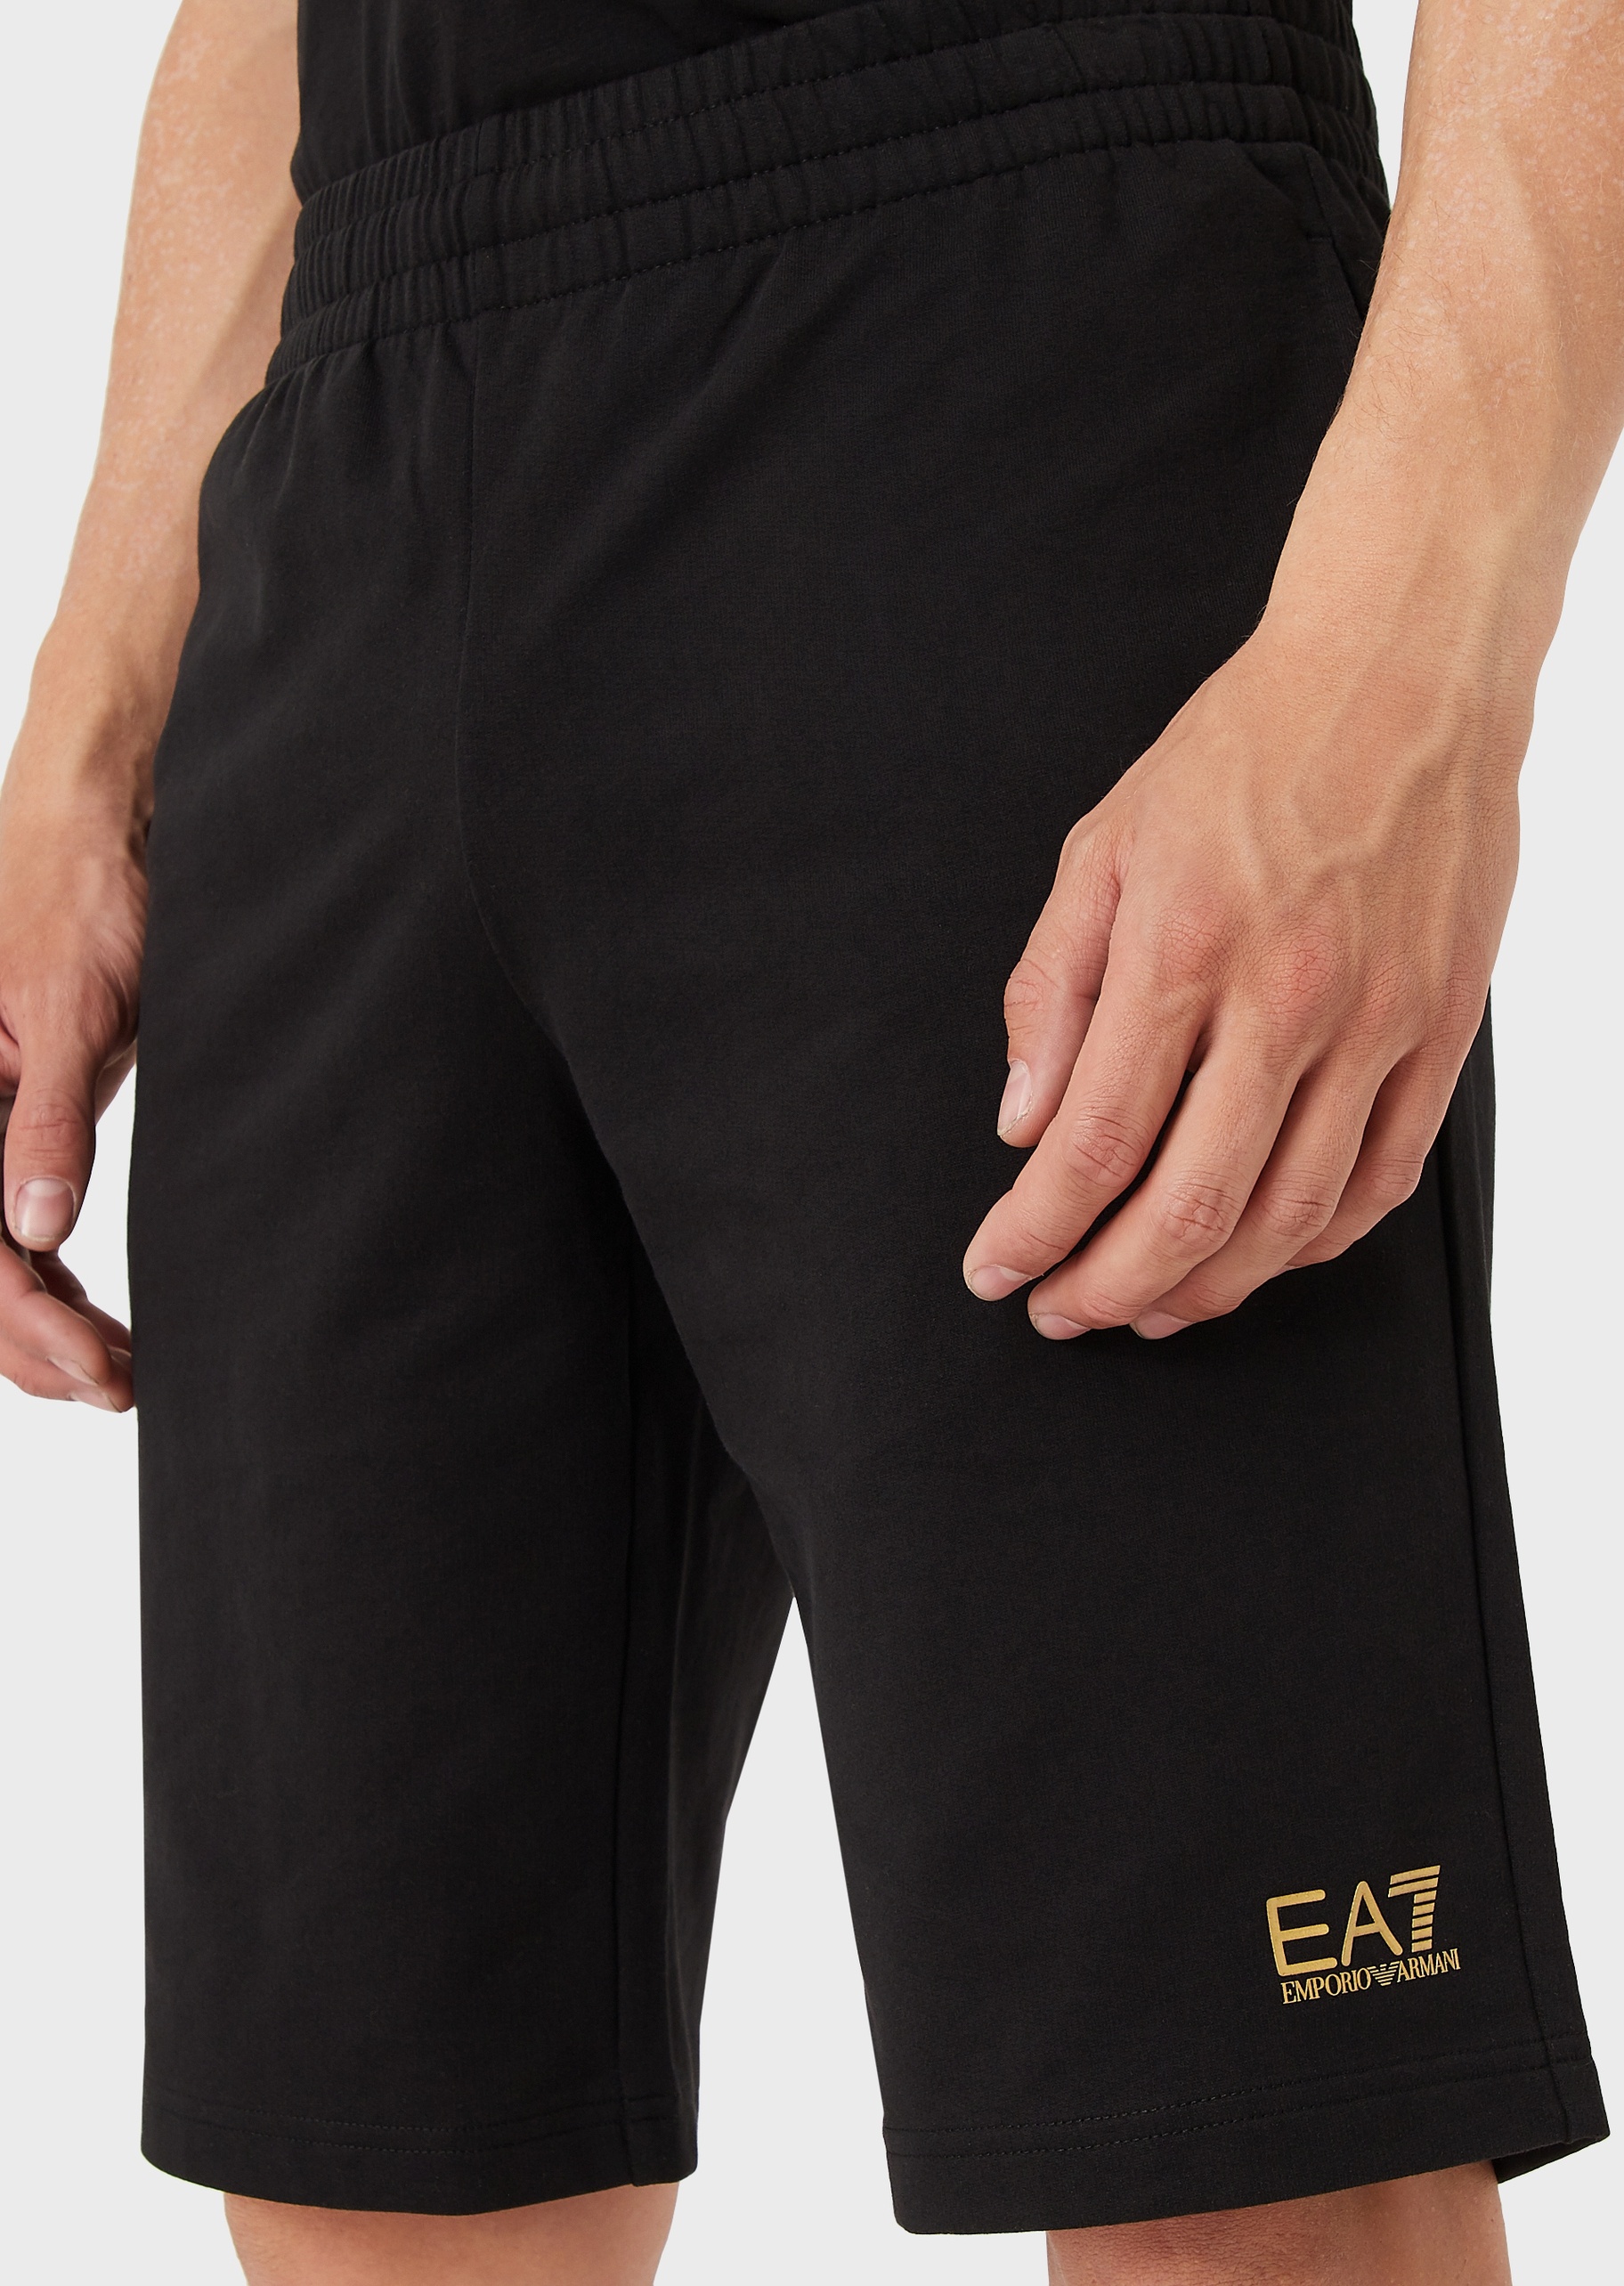 EA7 男士全棉合身短款直筒健身训练运动短裤